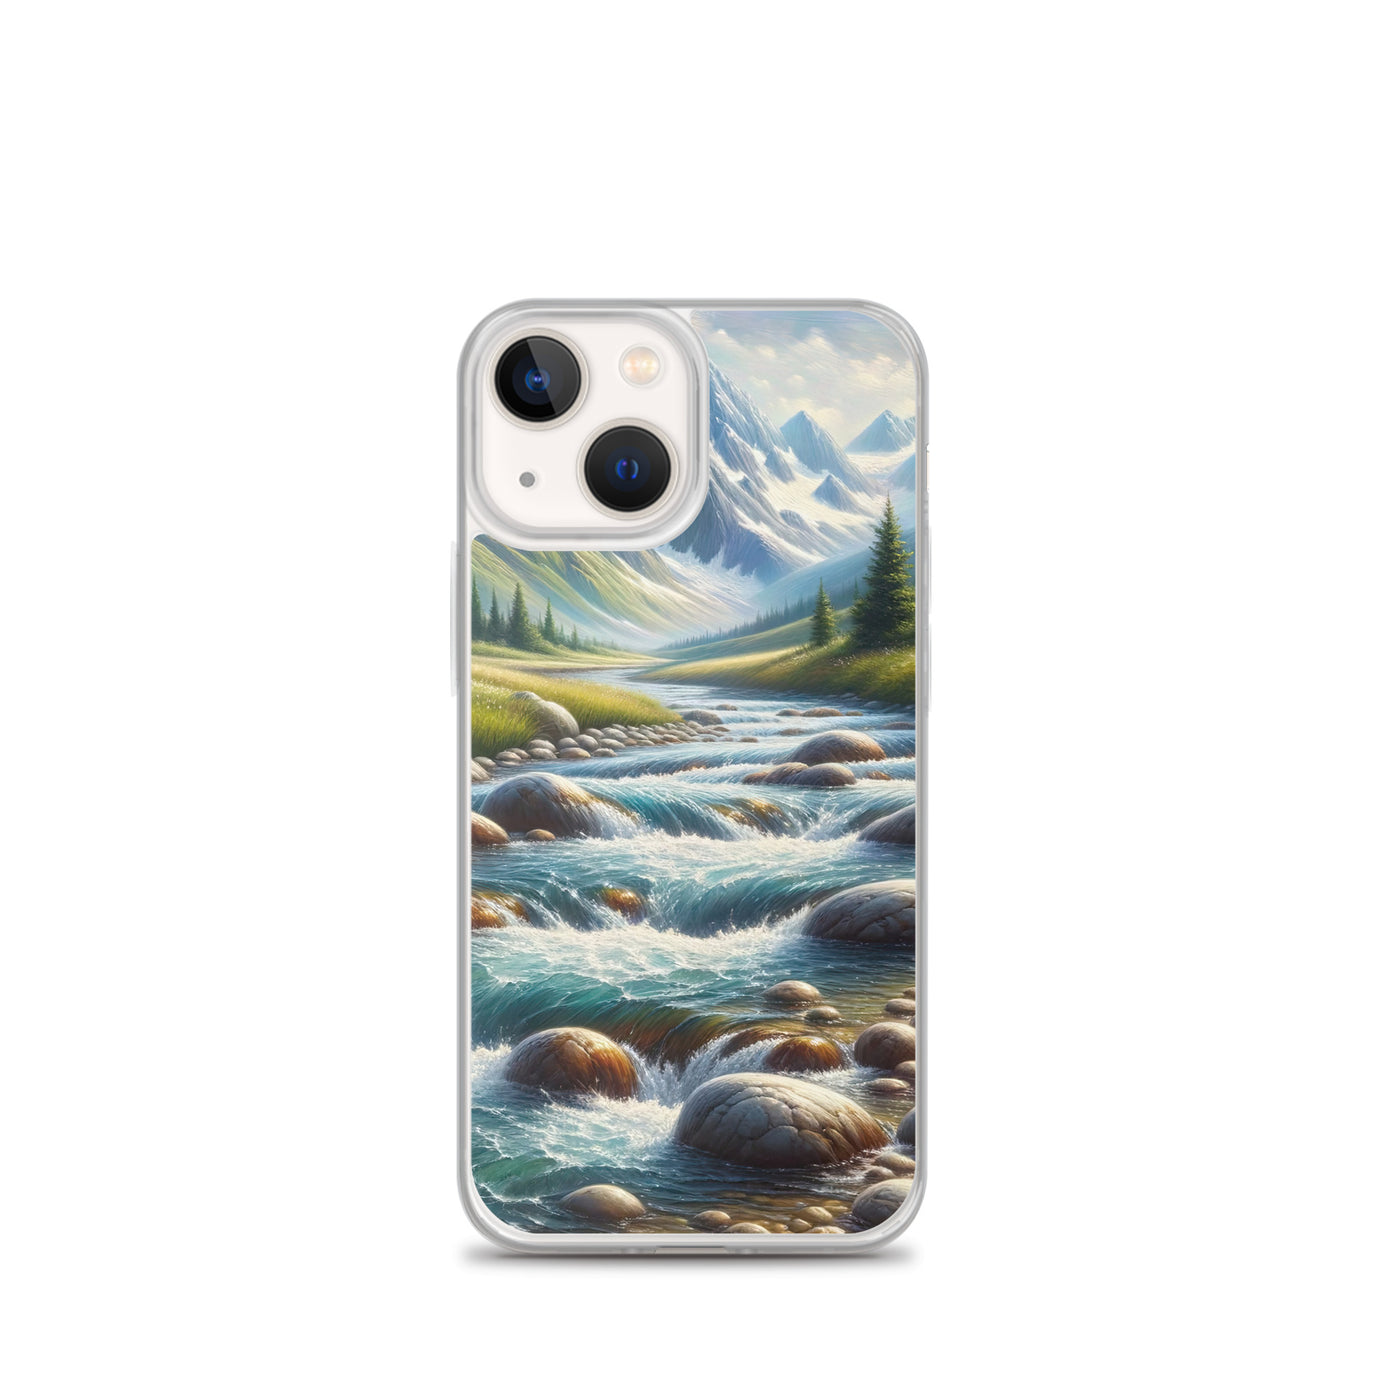 Ölgemälde eines Gebirgsbachs durch felsige Landschaft - iPhone Schutzhülle (durchsichtig) berge xxx yyy zzz iPhone 13 mini